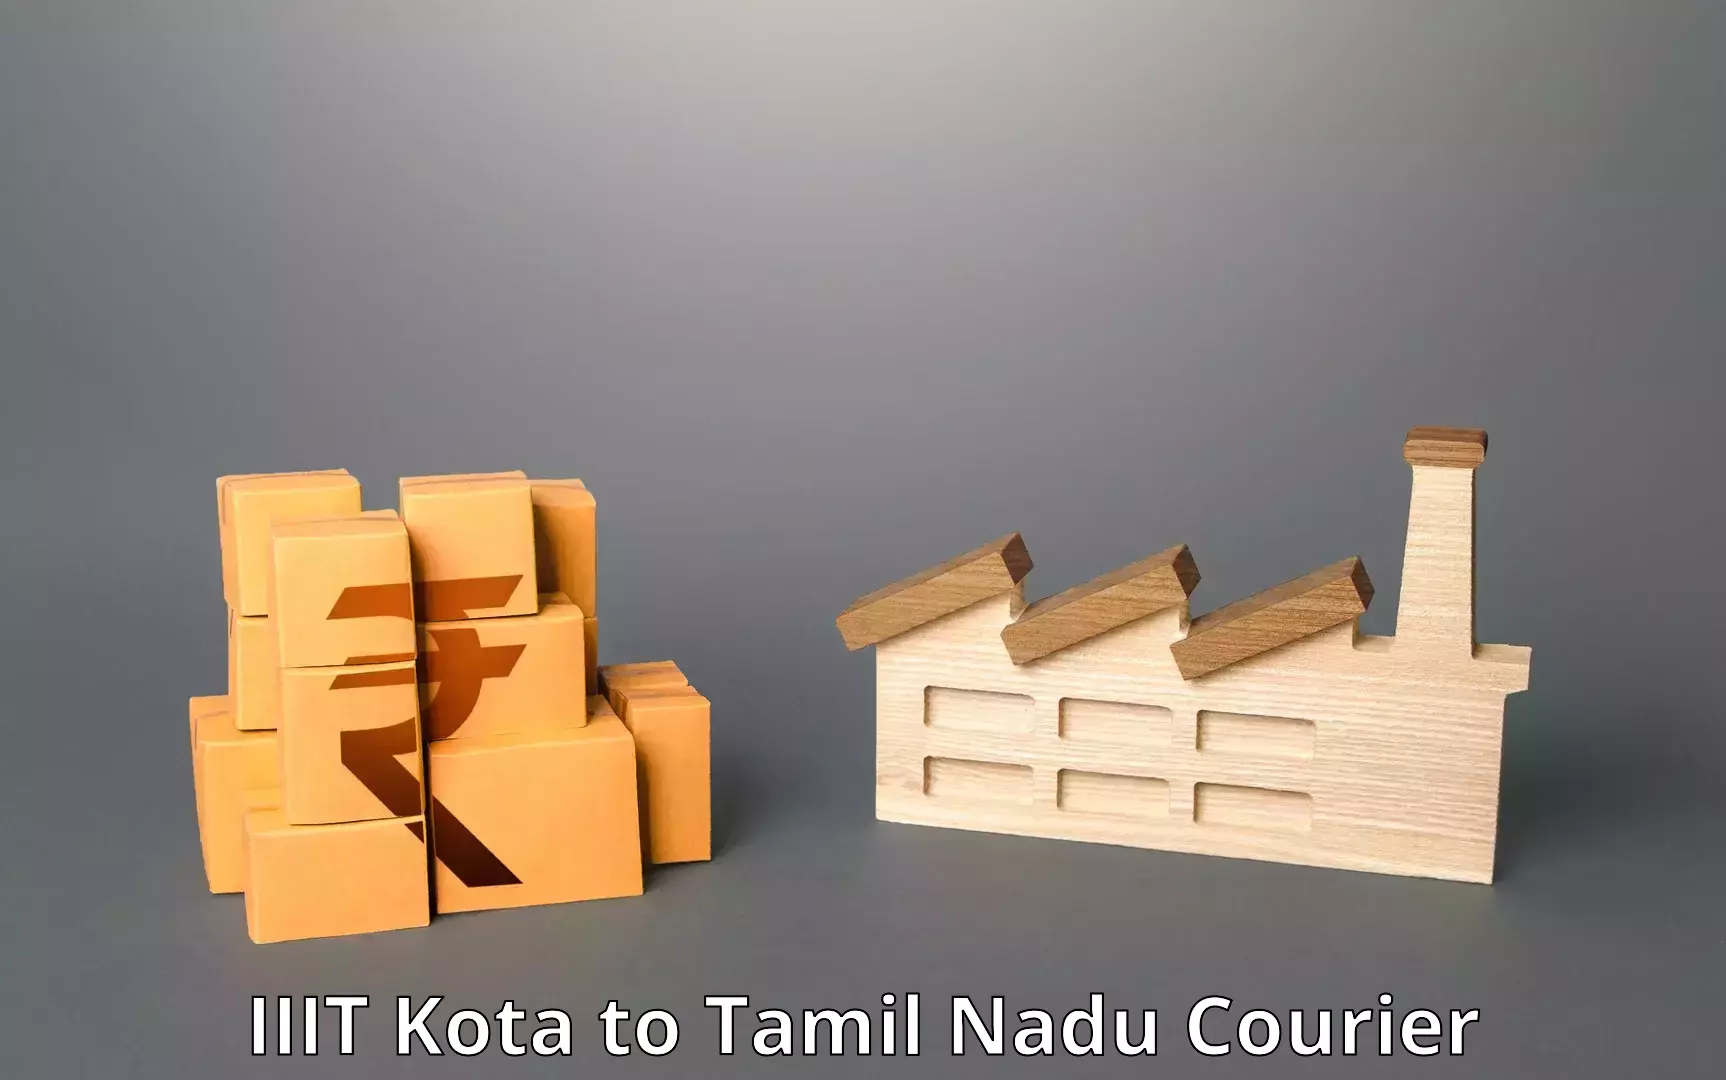 High-priority parcel service IIIT Kota to Tamil Nadu